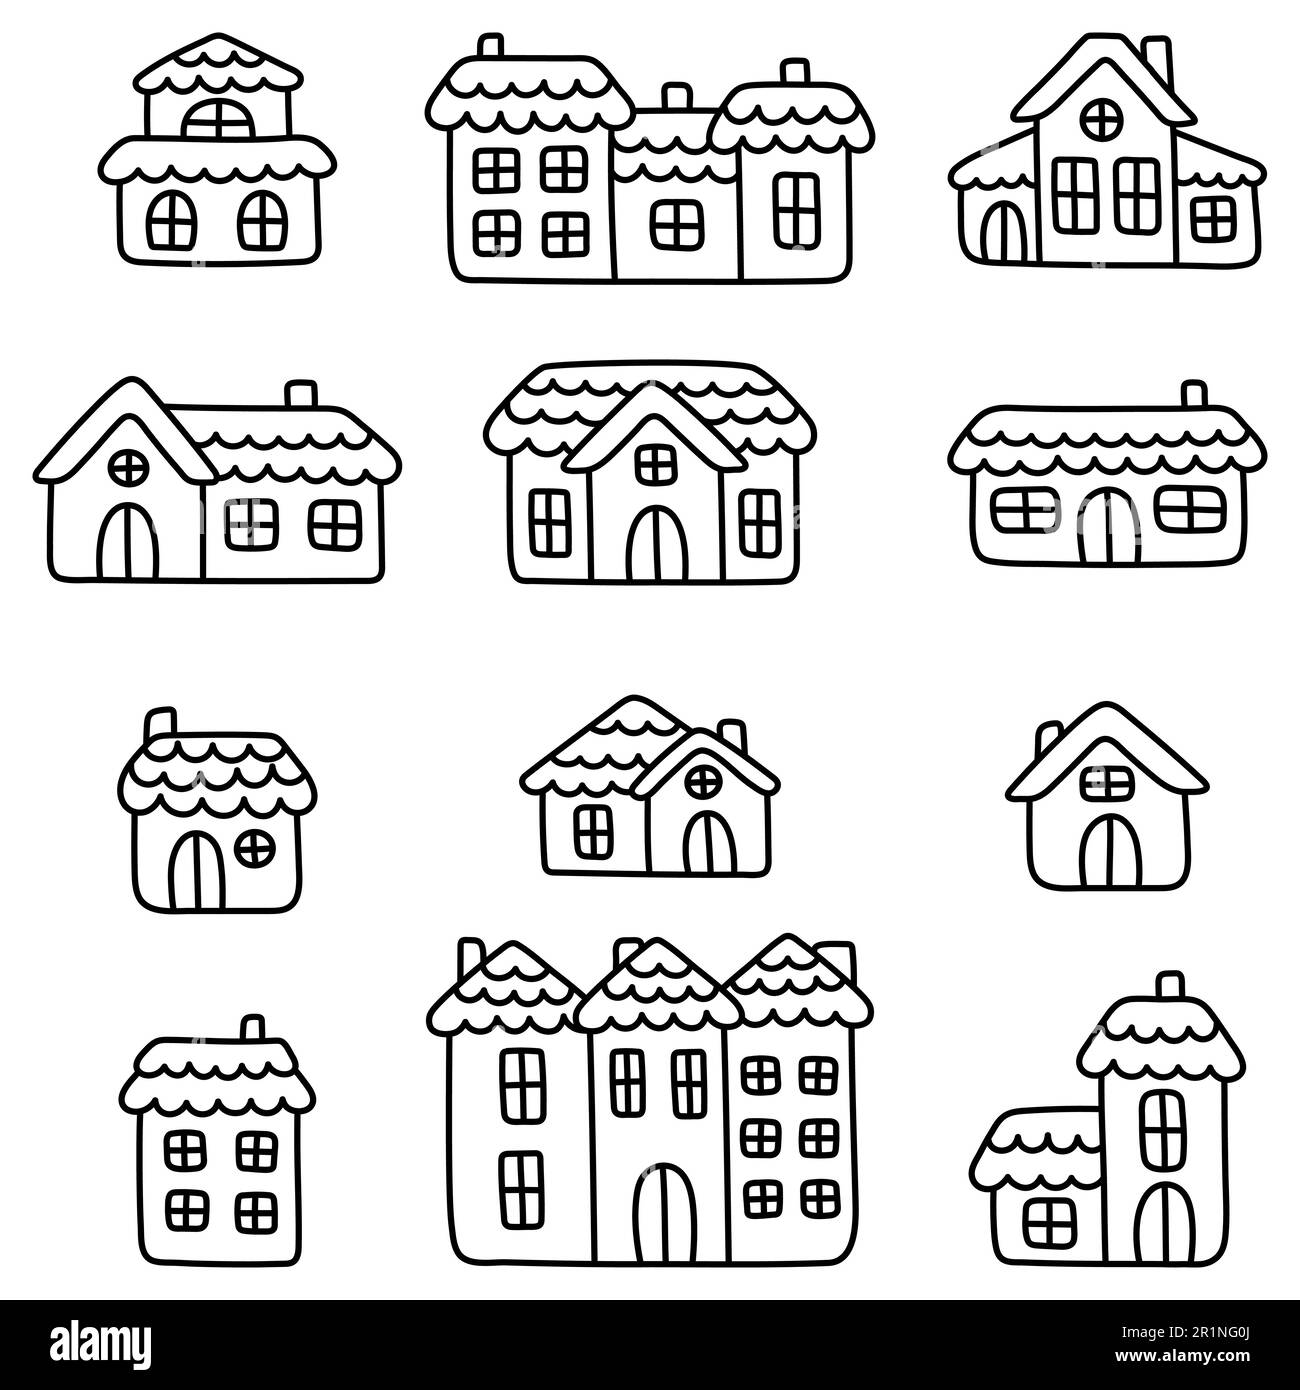 Eine Sammlung von einfachen und niedlichen linearen Häusern. Doodle Art Illustration. Set aus flachen Elementen für die Gestaltung von Kinderwaren und -Bekleidung. Kawaii Stock Vektor